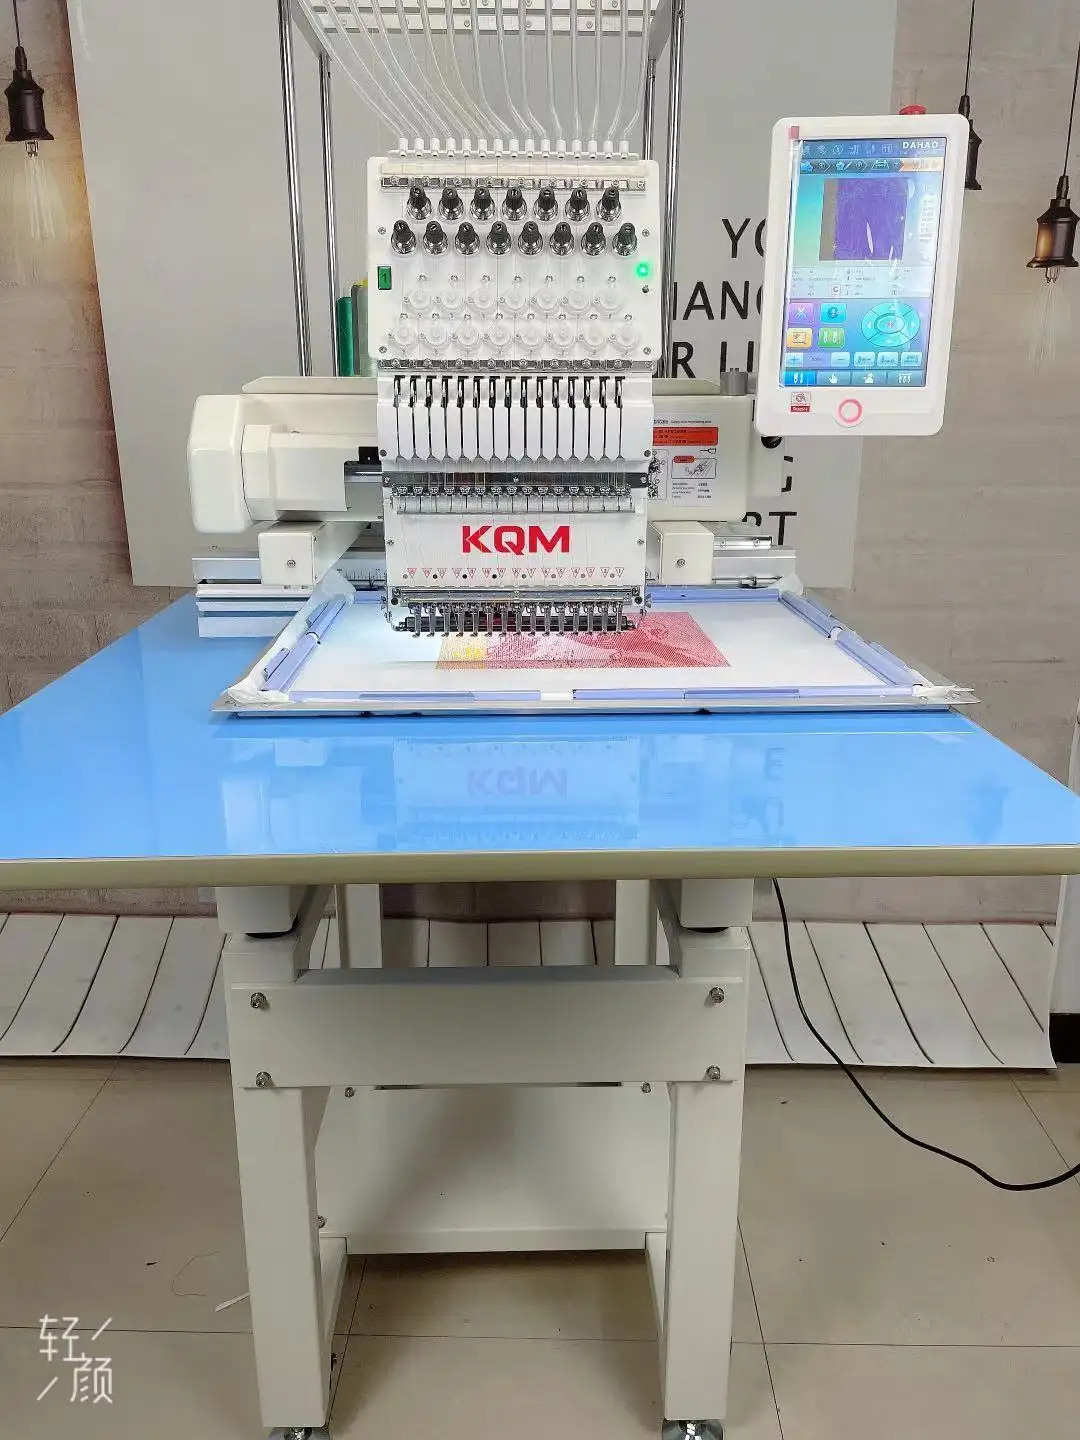 KQM 1 सिंगल हेड्स 15 कलर कंप्यूटर कंट्रोल कैप टी-शर्ट कढ़ाई मशीन